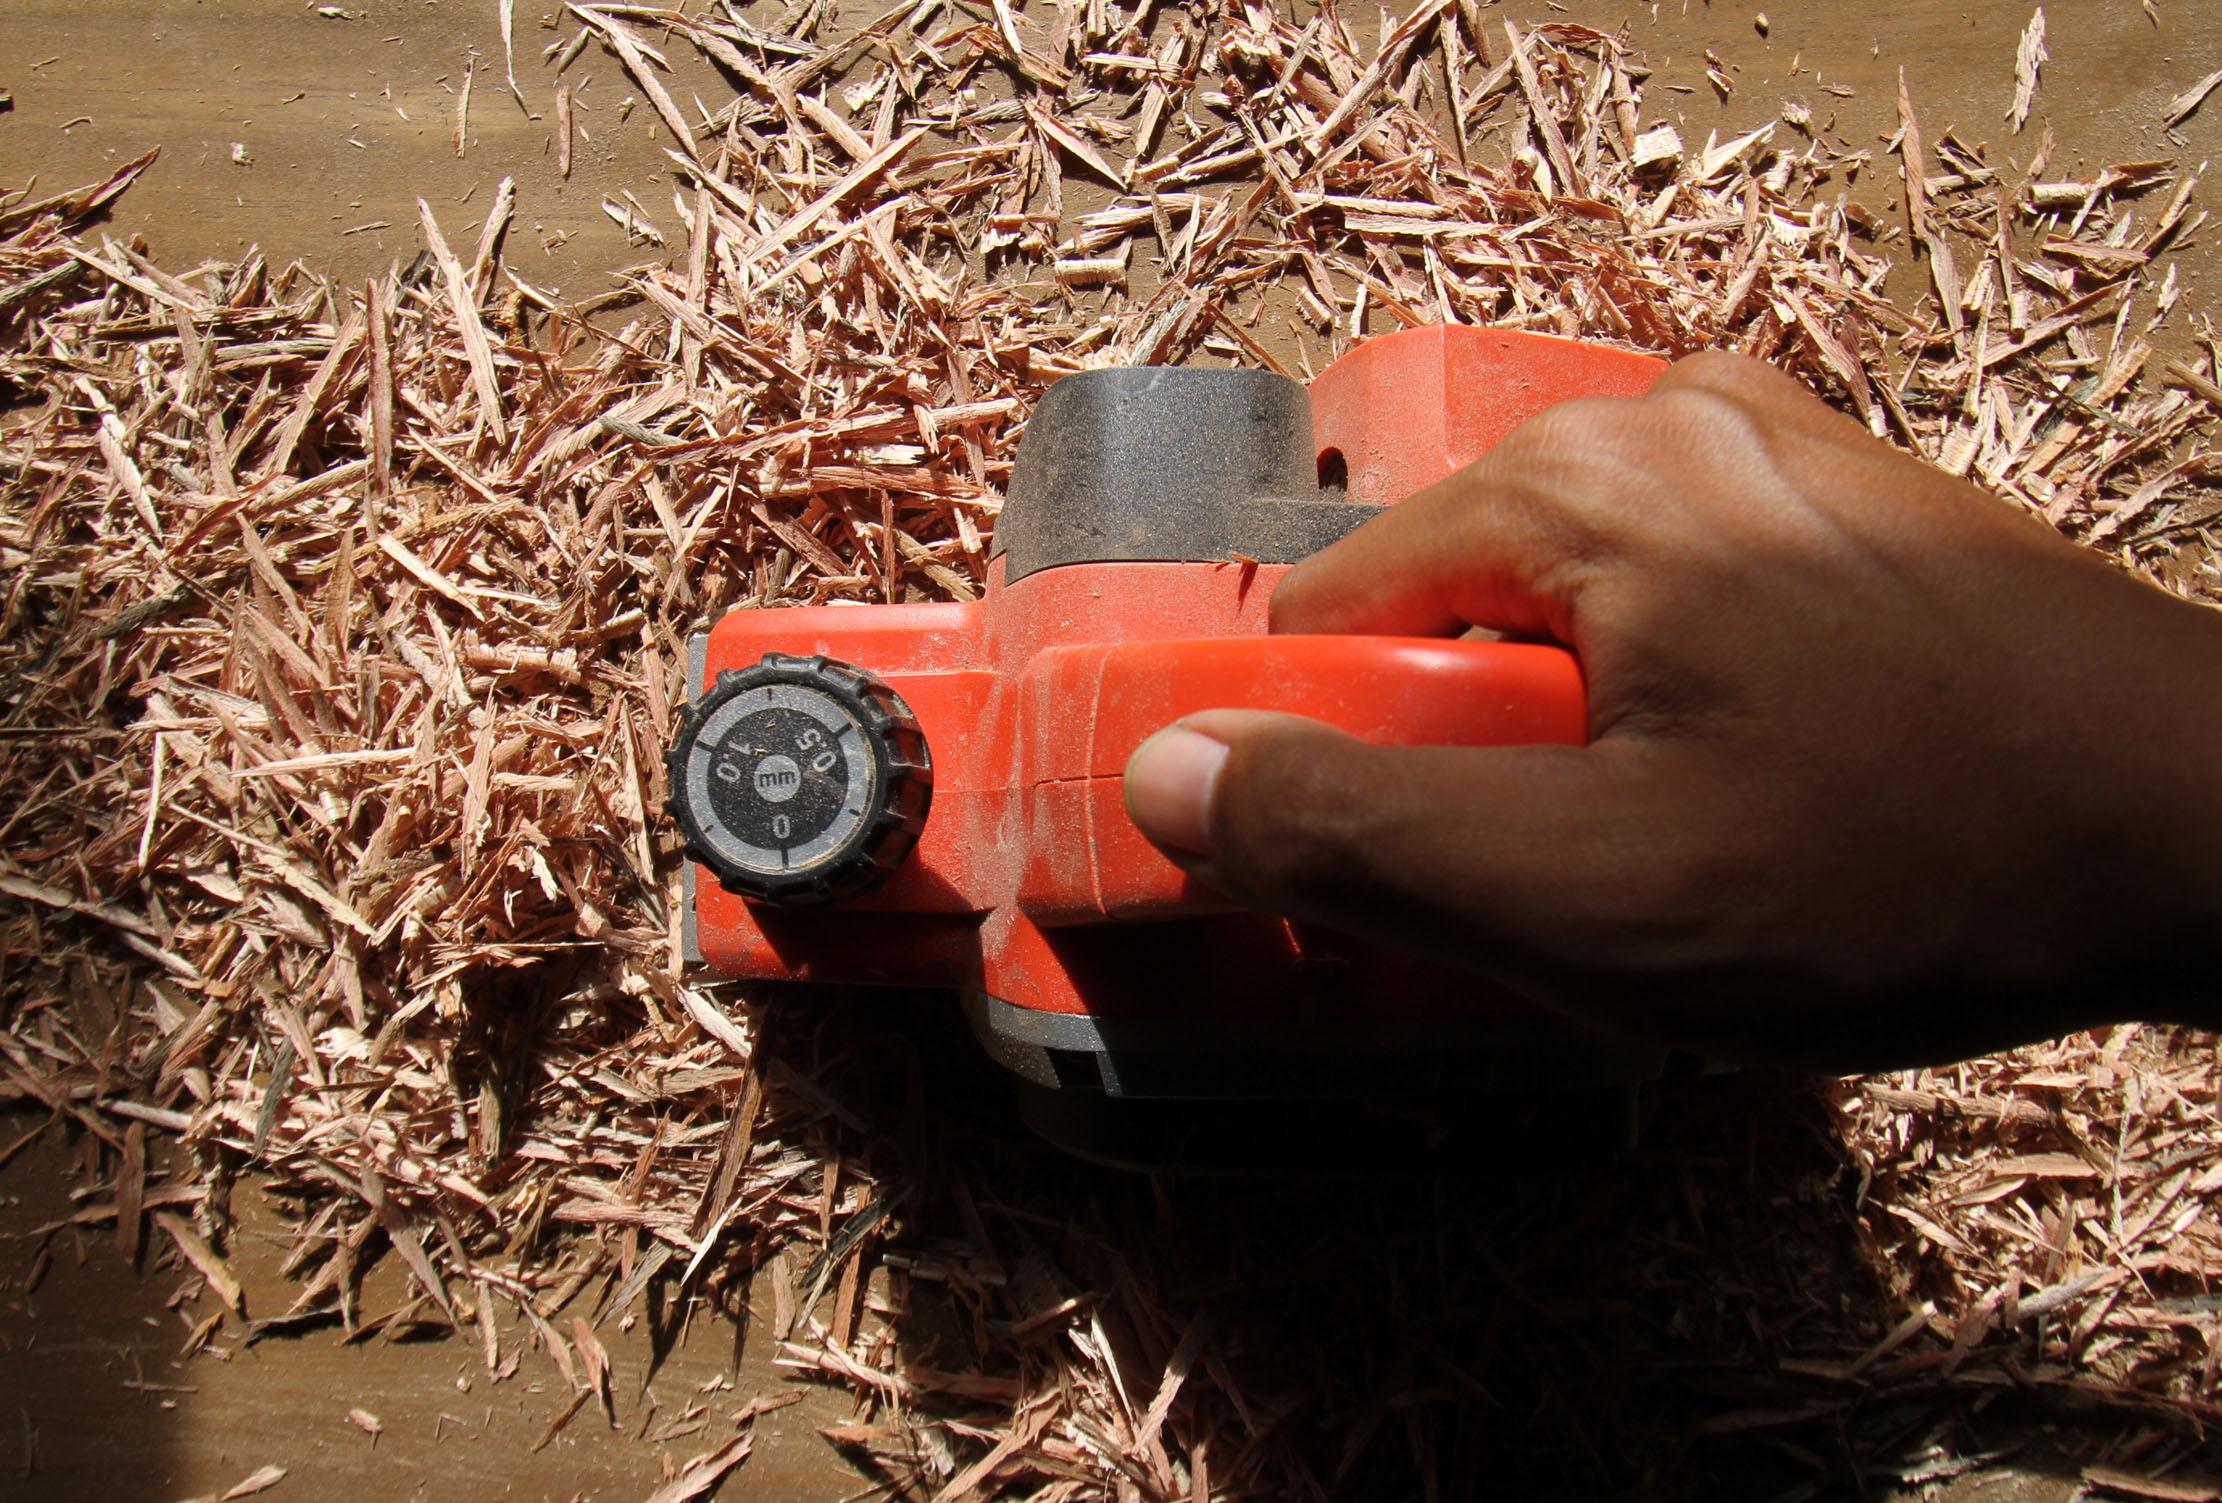 <p>Nampak seorang pekerja tengah mengolah kayu sisa di rumah produksi milik Yayat di kawasan Kunciran Kecamatan Pinang Kota Tangerang,Selasa 23 Maret 2021. Foto: Panji Asmoro/TrenAsia</p>
